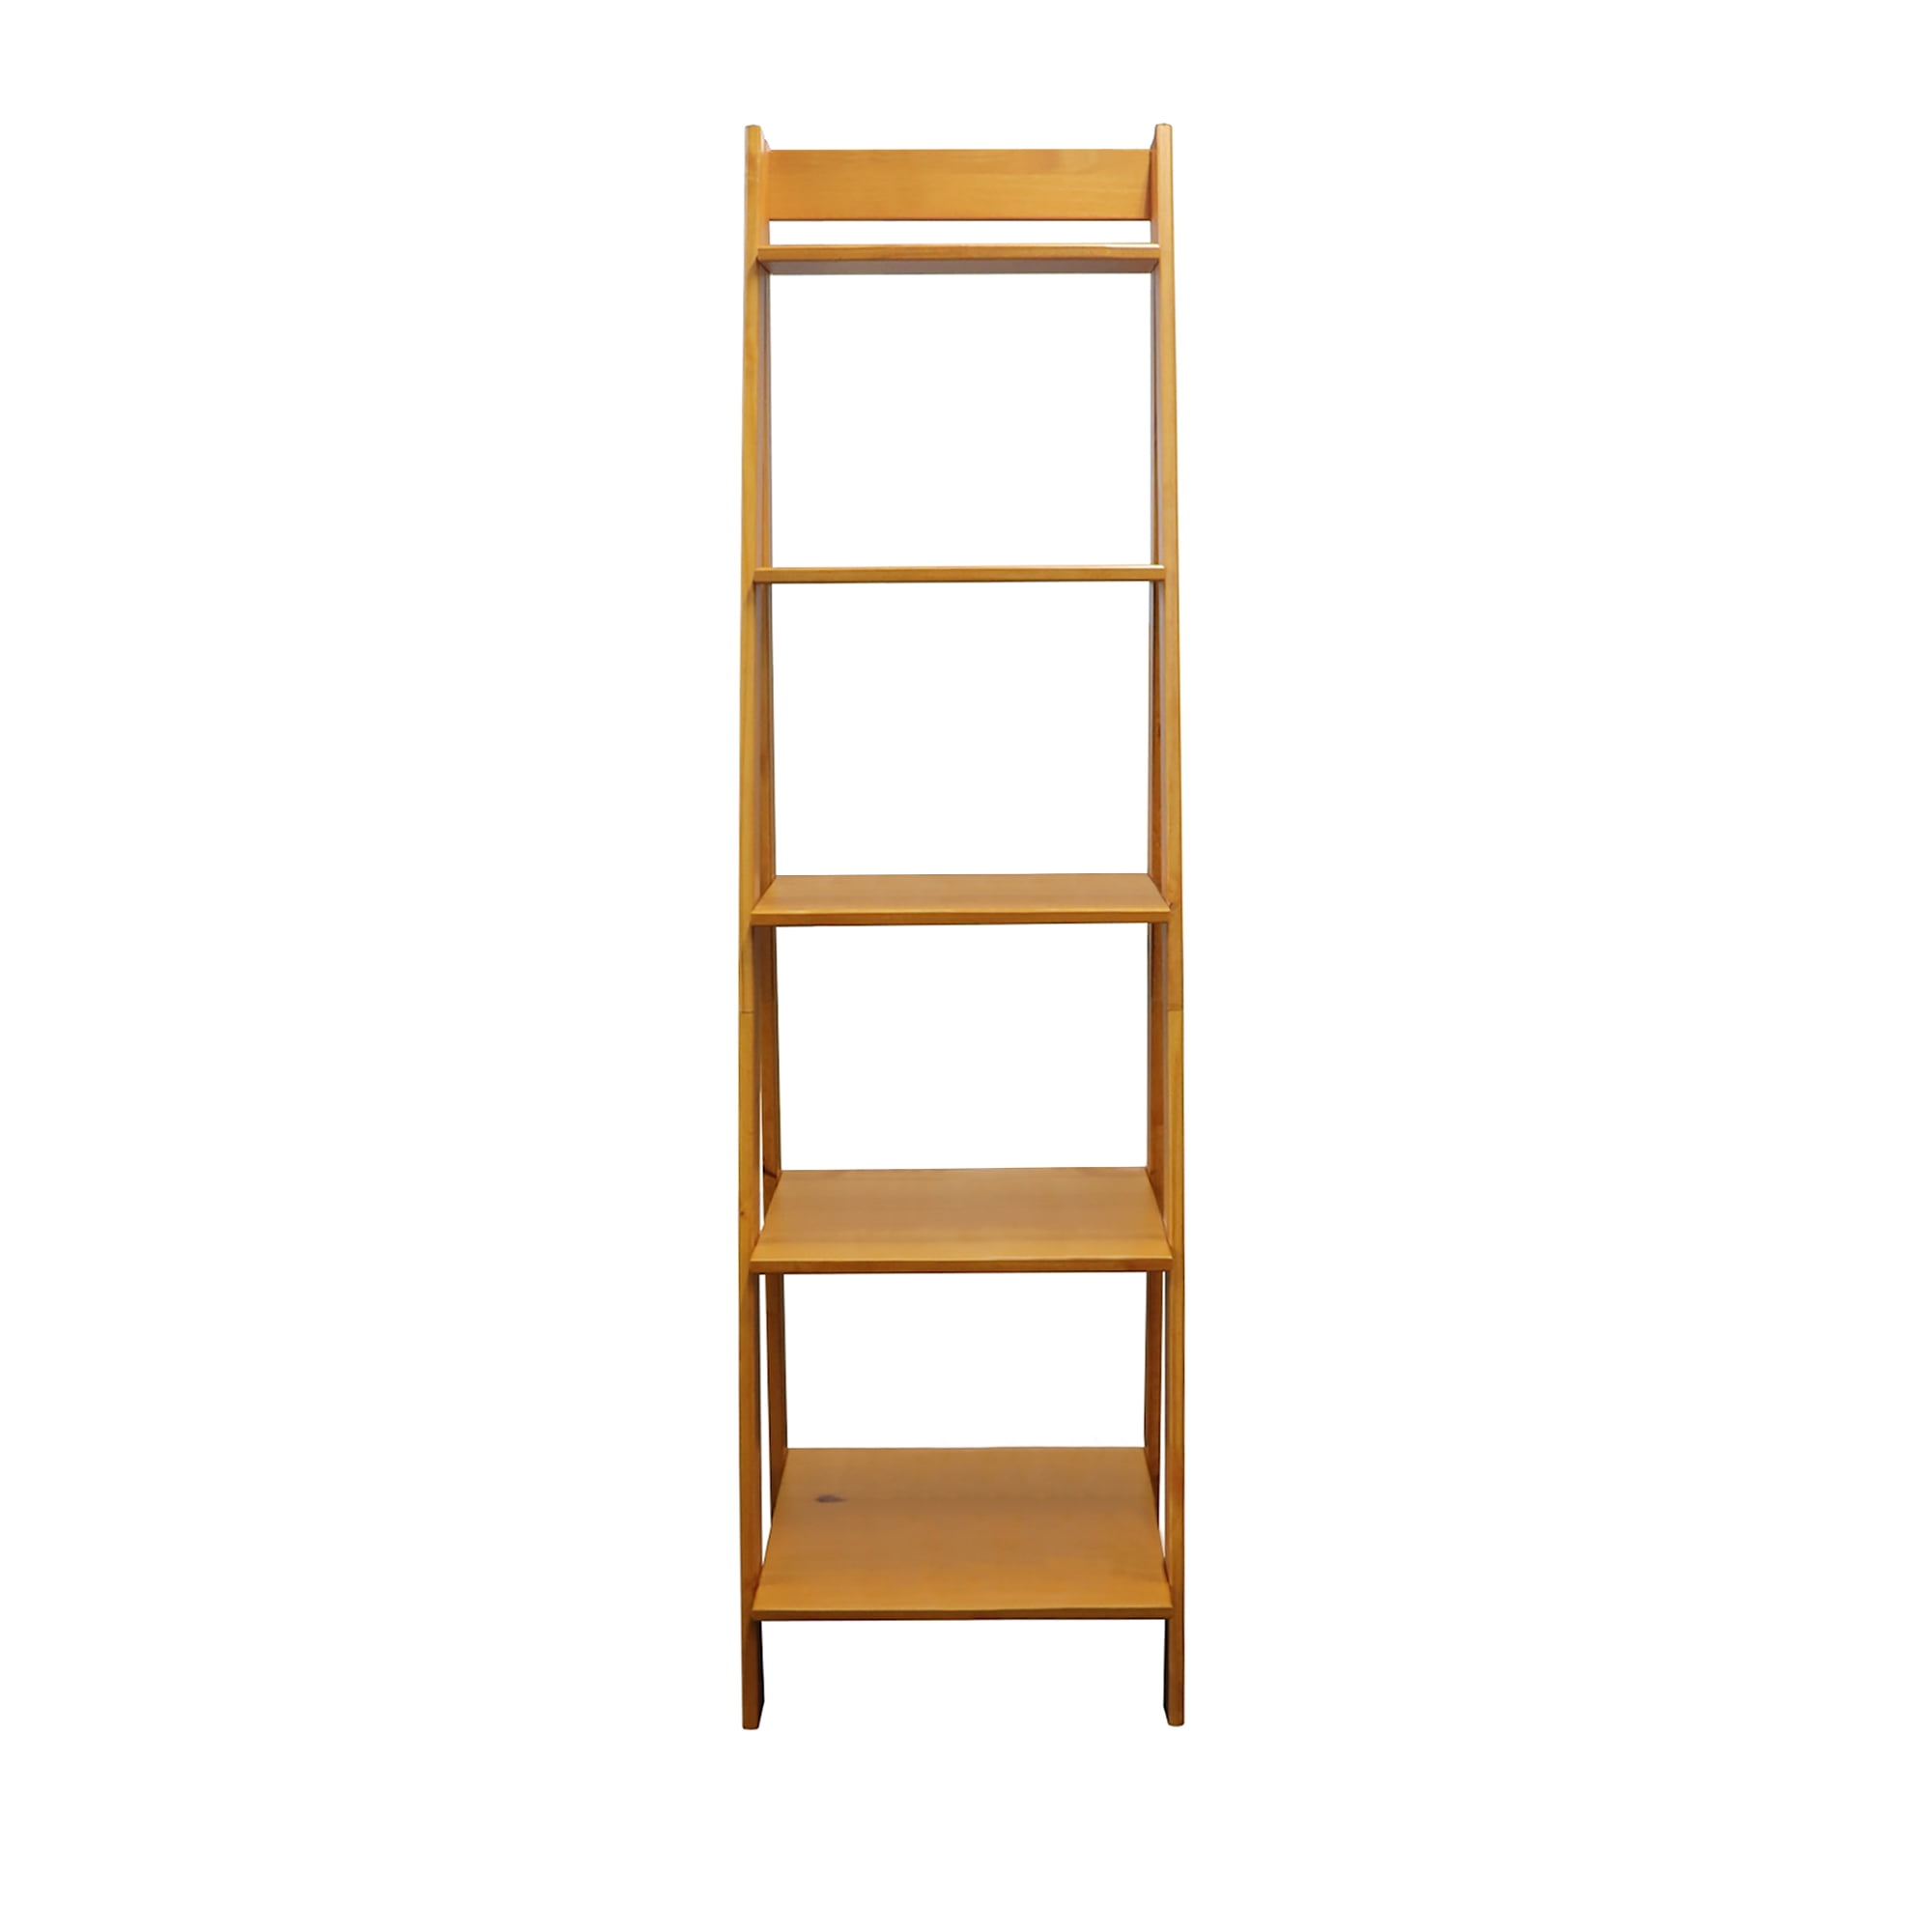 ADEPTUS 5 Ladder Shelf Natural & White